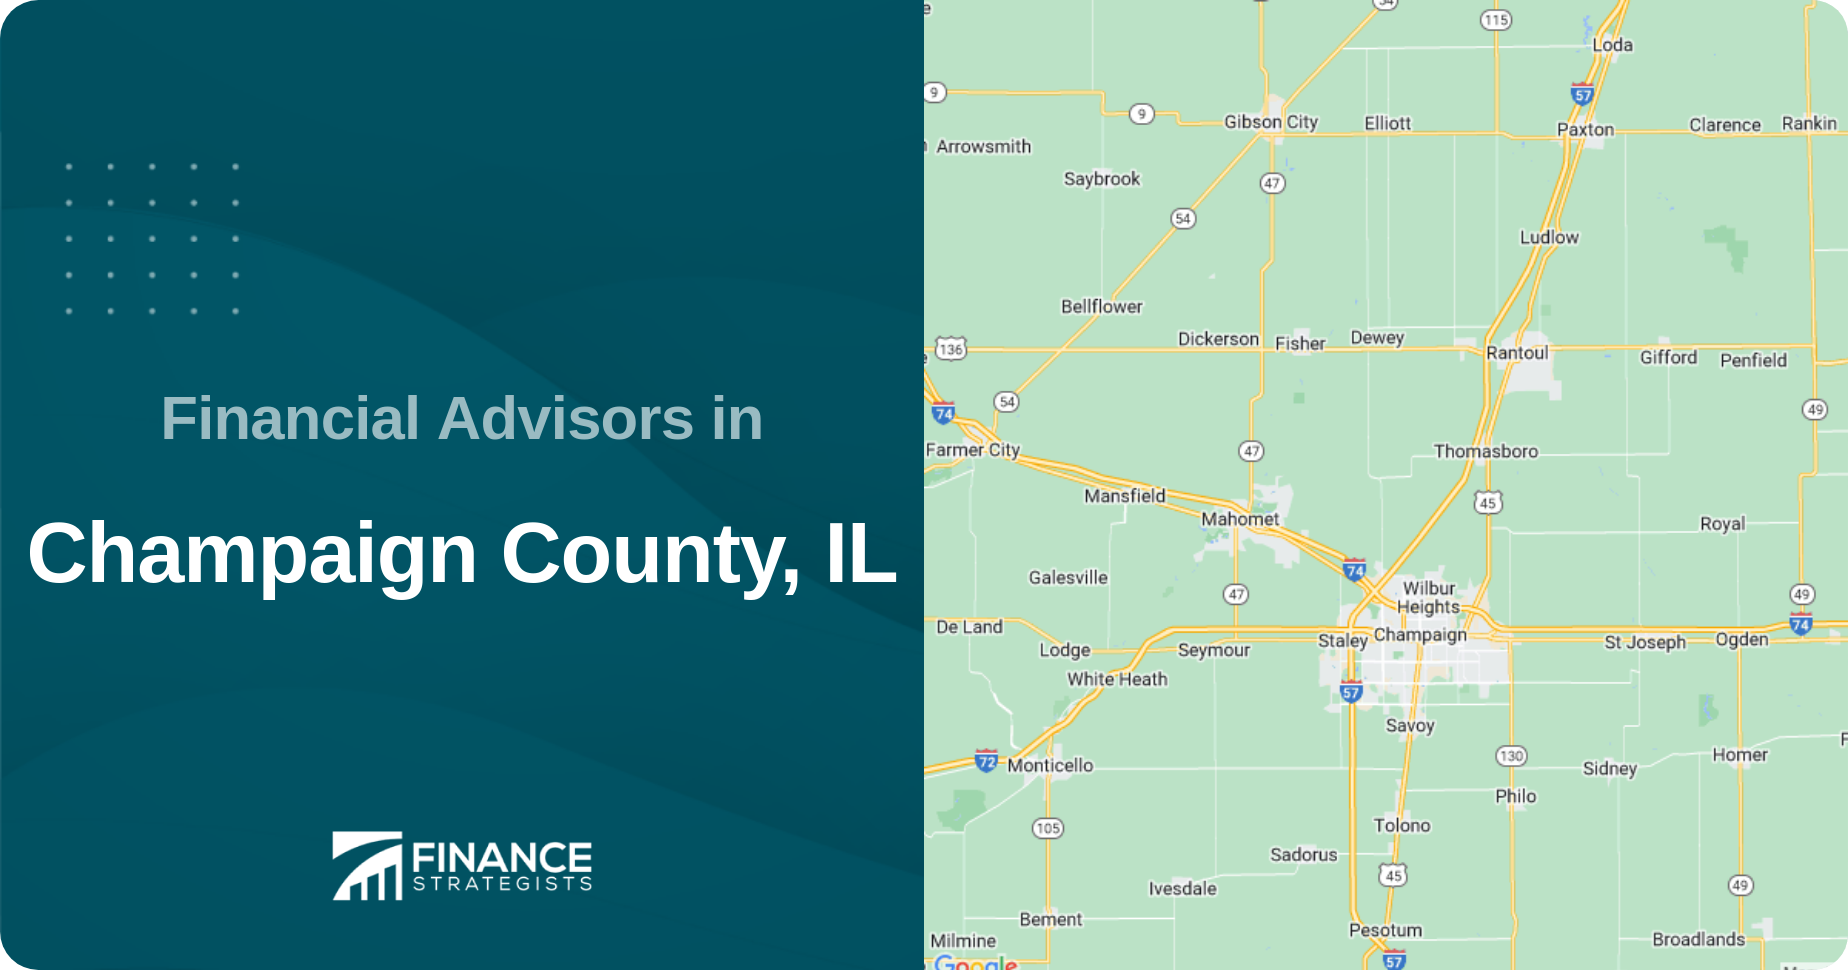 Financial Advisors in Champaign County, IL